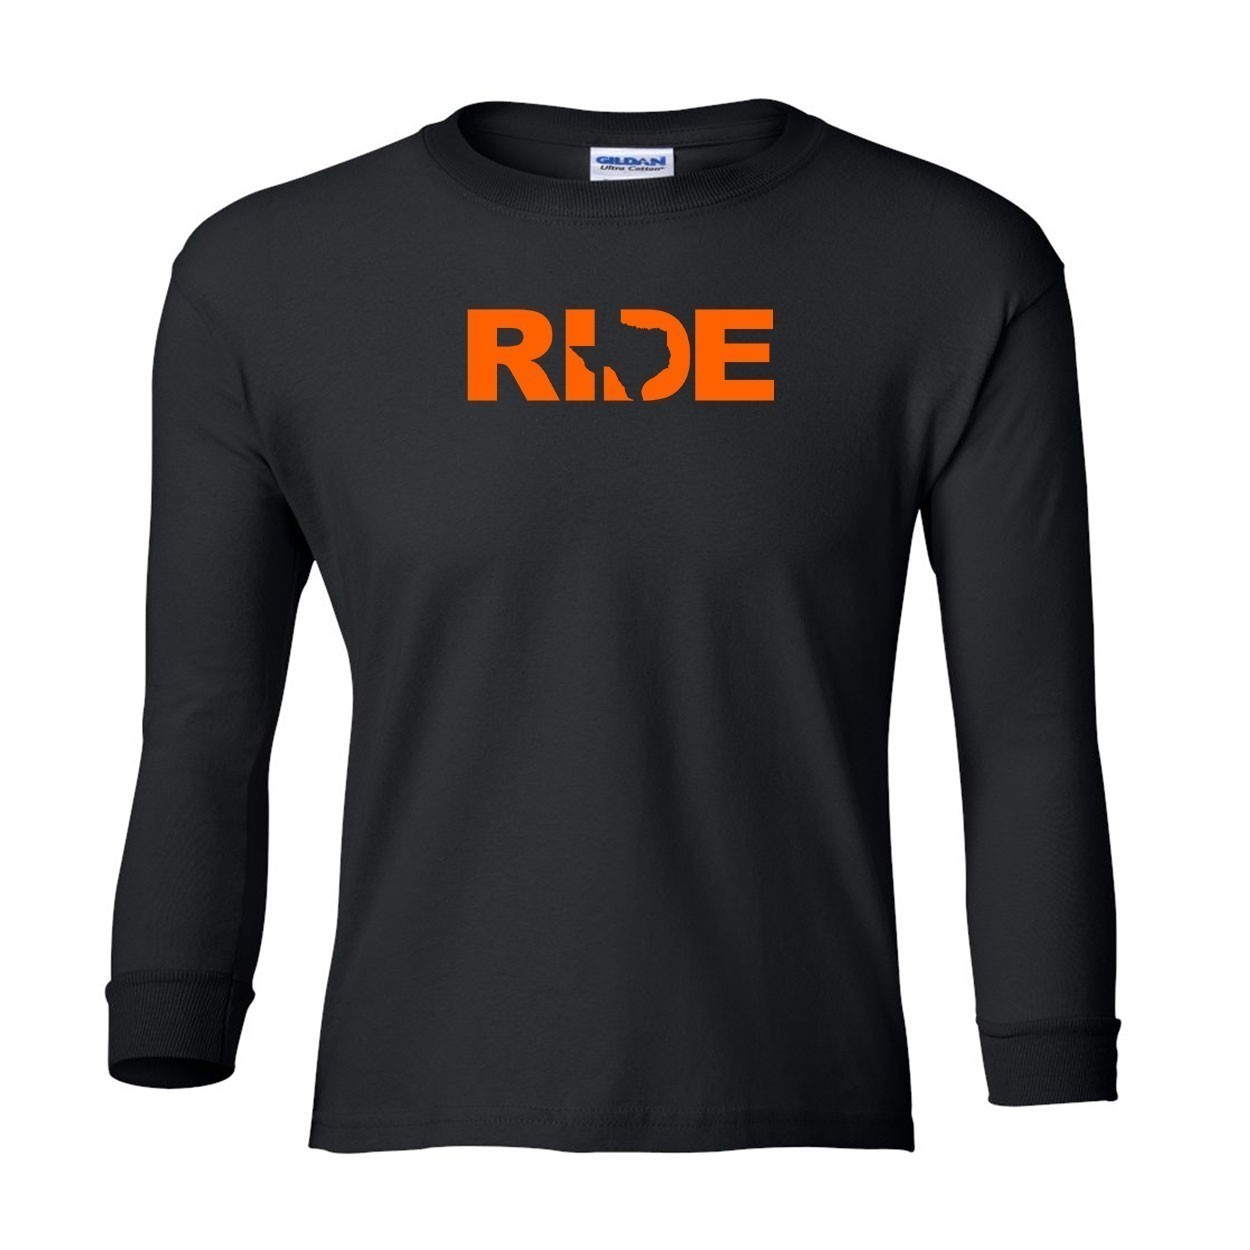 Ride Texas Classic Youth Unisex Long Sleeve T-Shirt Black (Orange Logo)